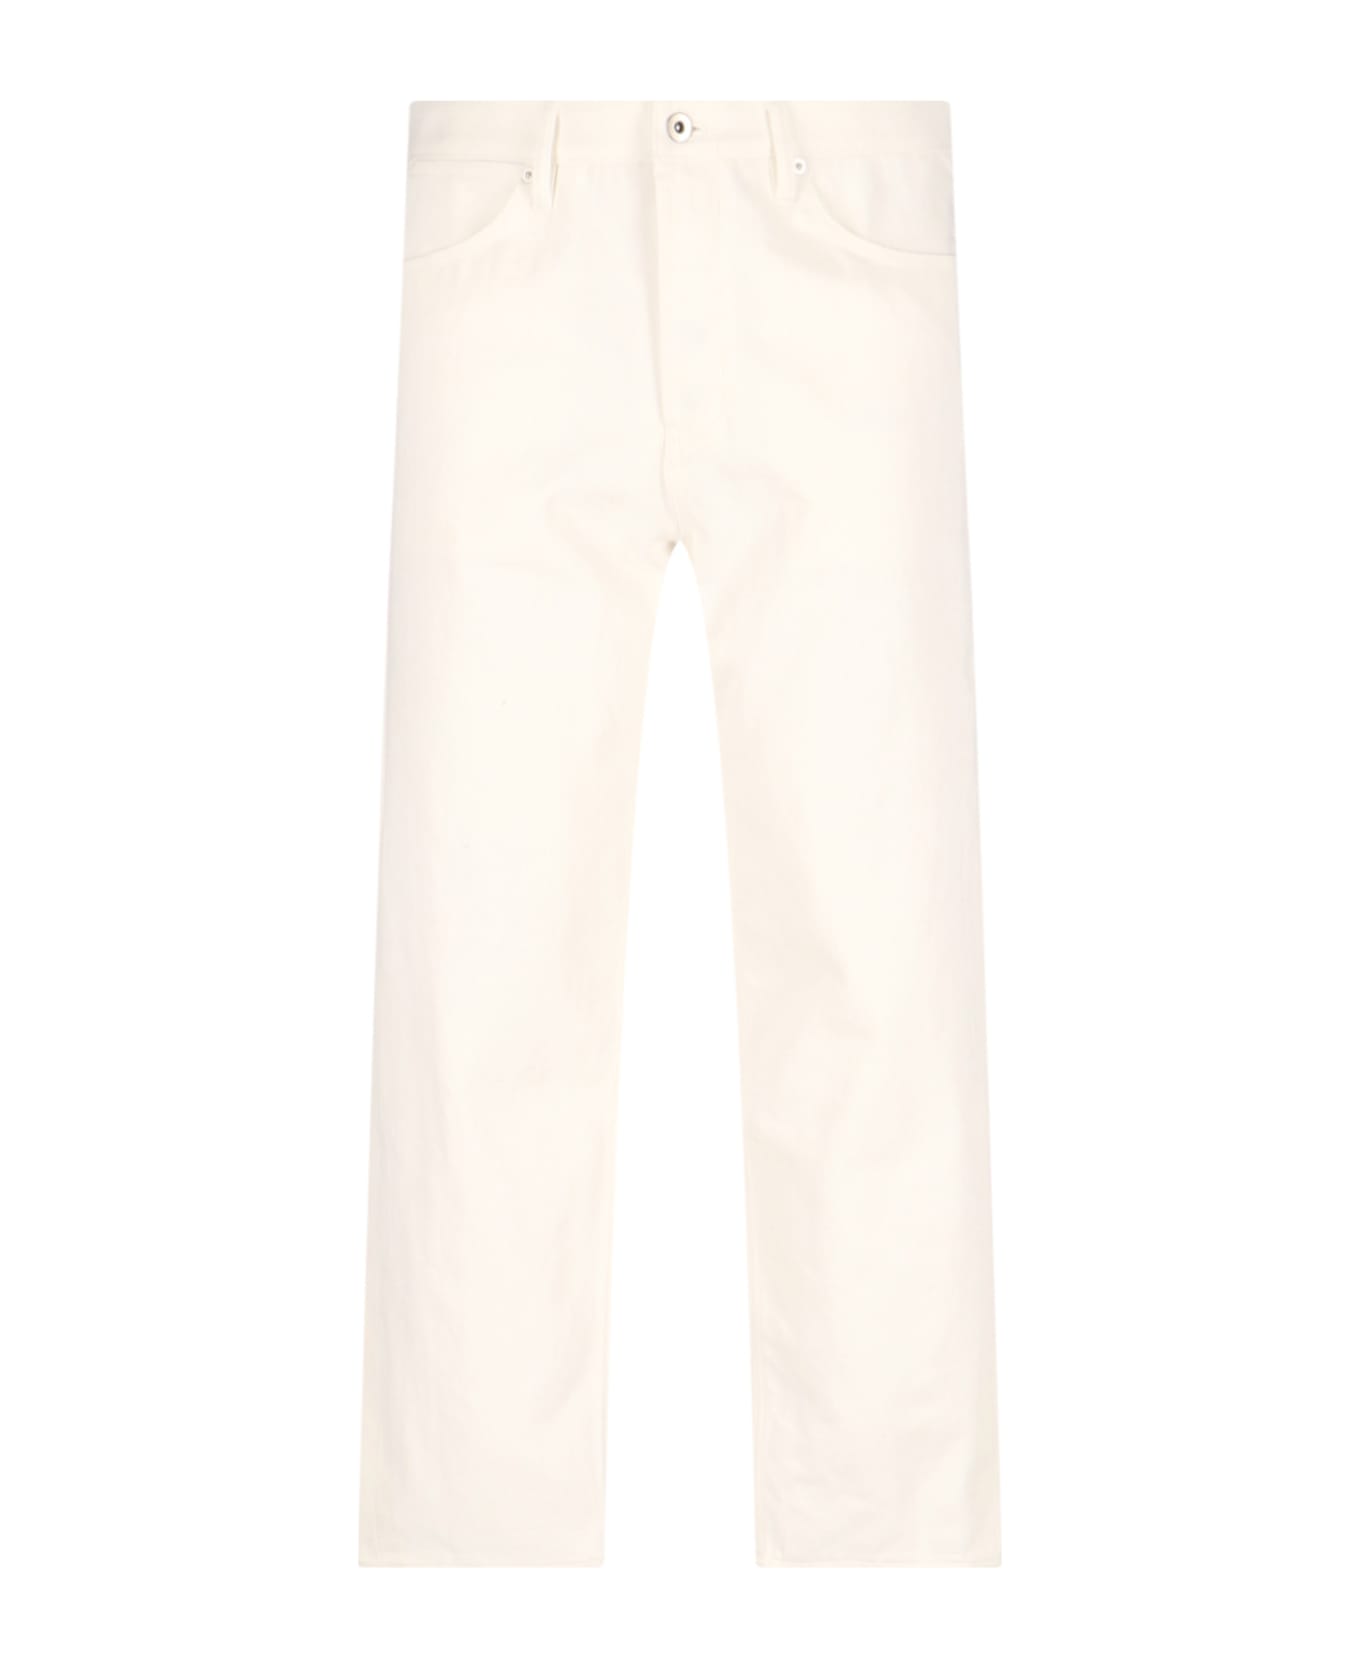 Jil Sander Straight-leg Jeans - White